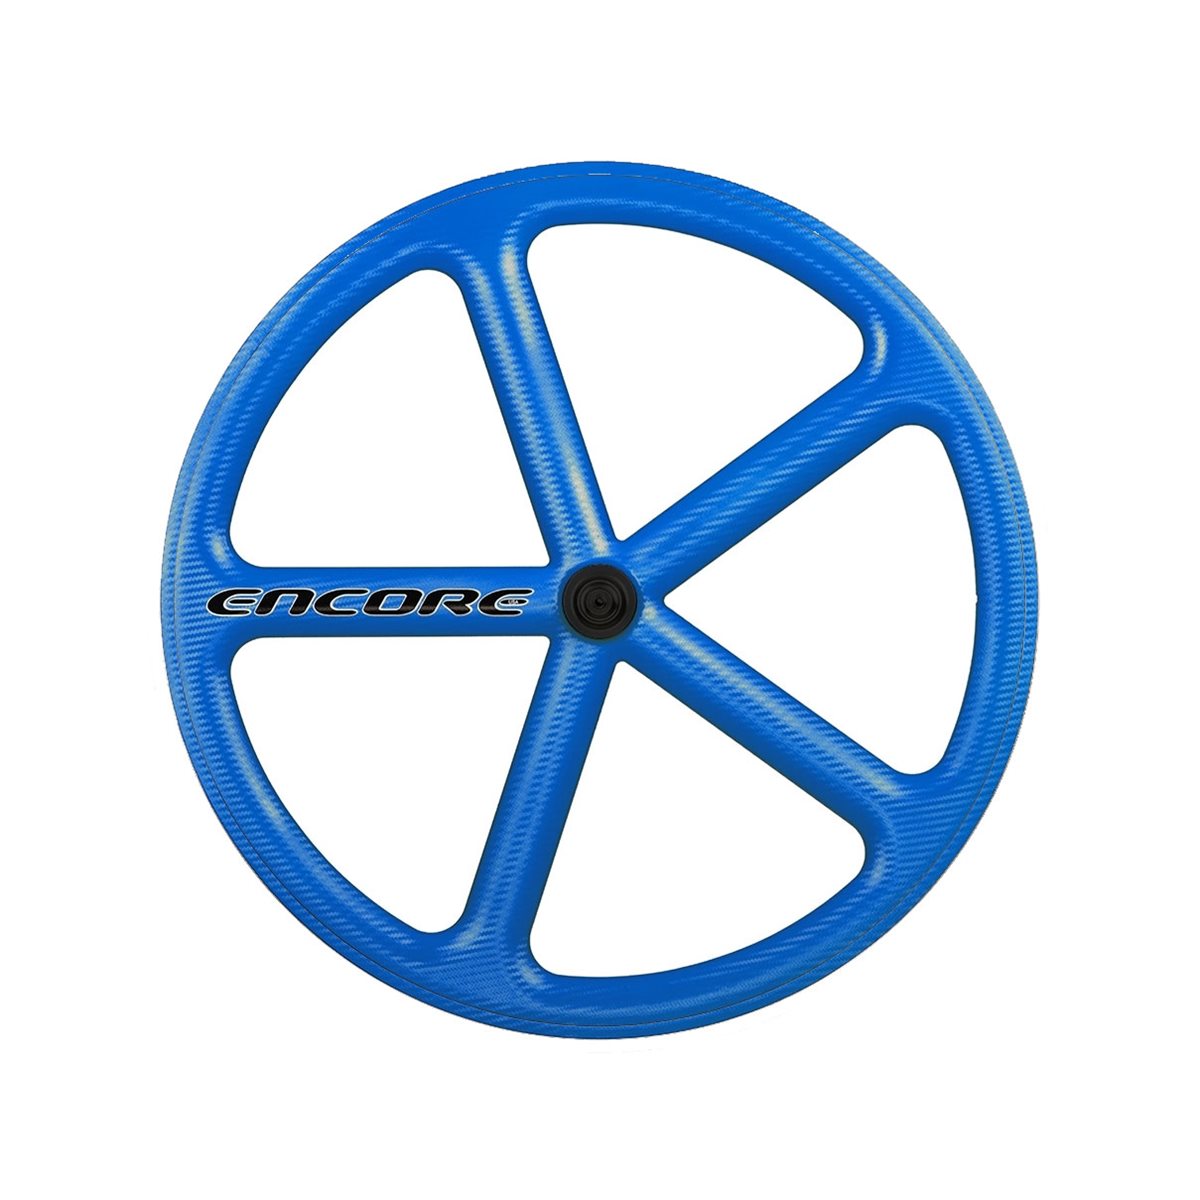 roue arrière 700c piste 5 rayons tissage carbone bleu nmsw